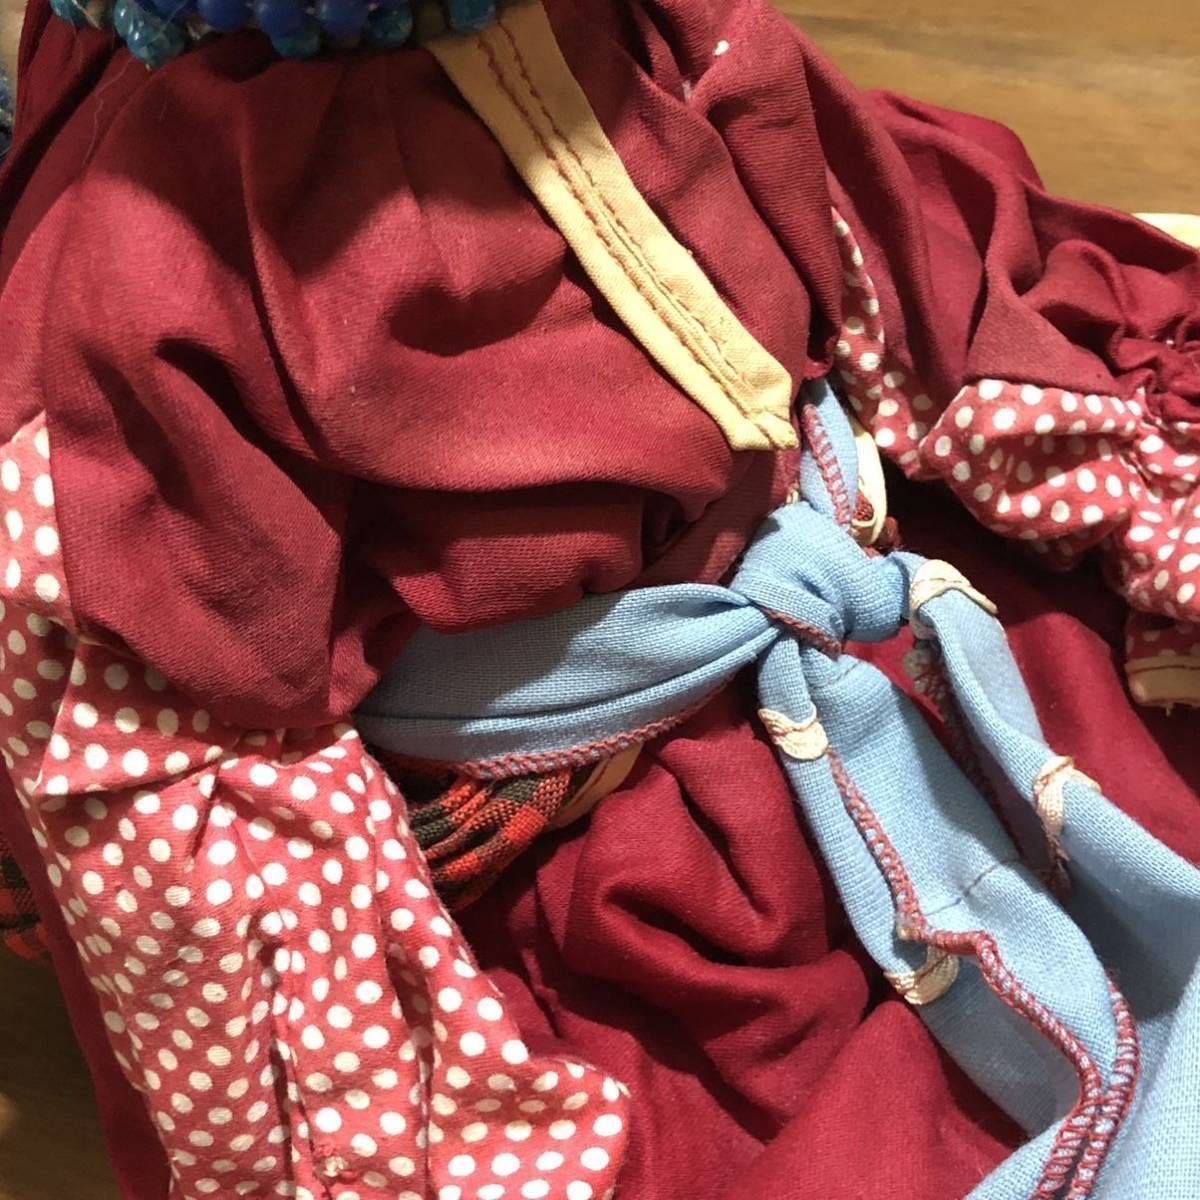 【即決/送料無料】 VINTAGE BERIOZKA DOLL ベリョースカ人形 スリープアイ人形 ビンテージドール 年代物中古 海外雑貨 インテリア